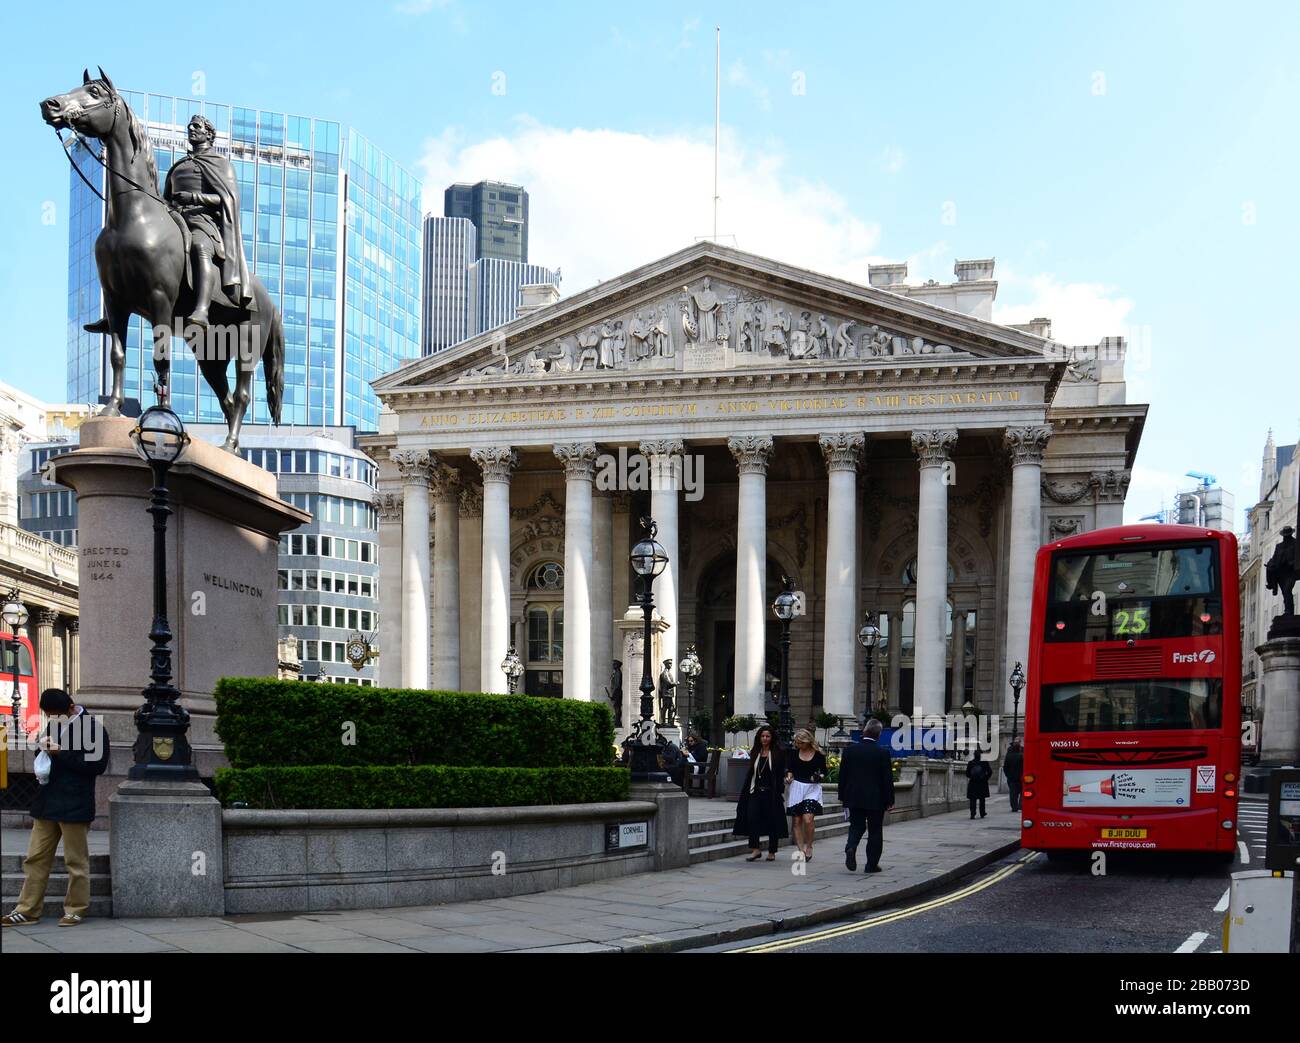 Scène de rue avec bus à impériale Red London en face de la Royal Exchange dans le quartier financier. Londres, Royaume-Uni Banque D'Images